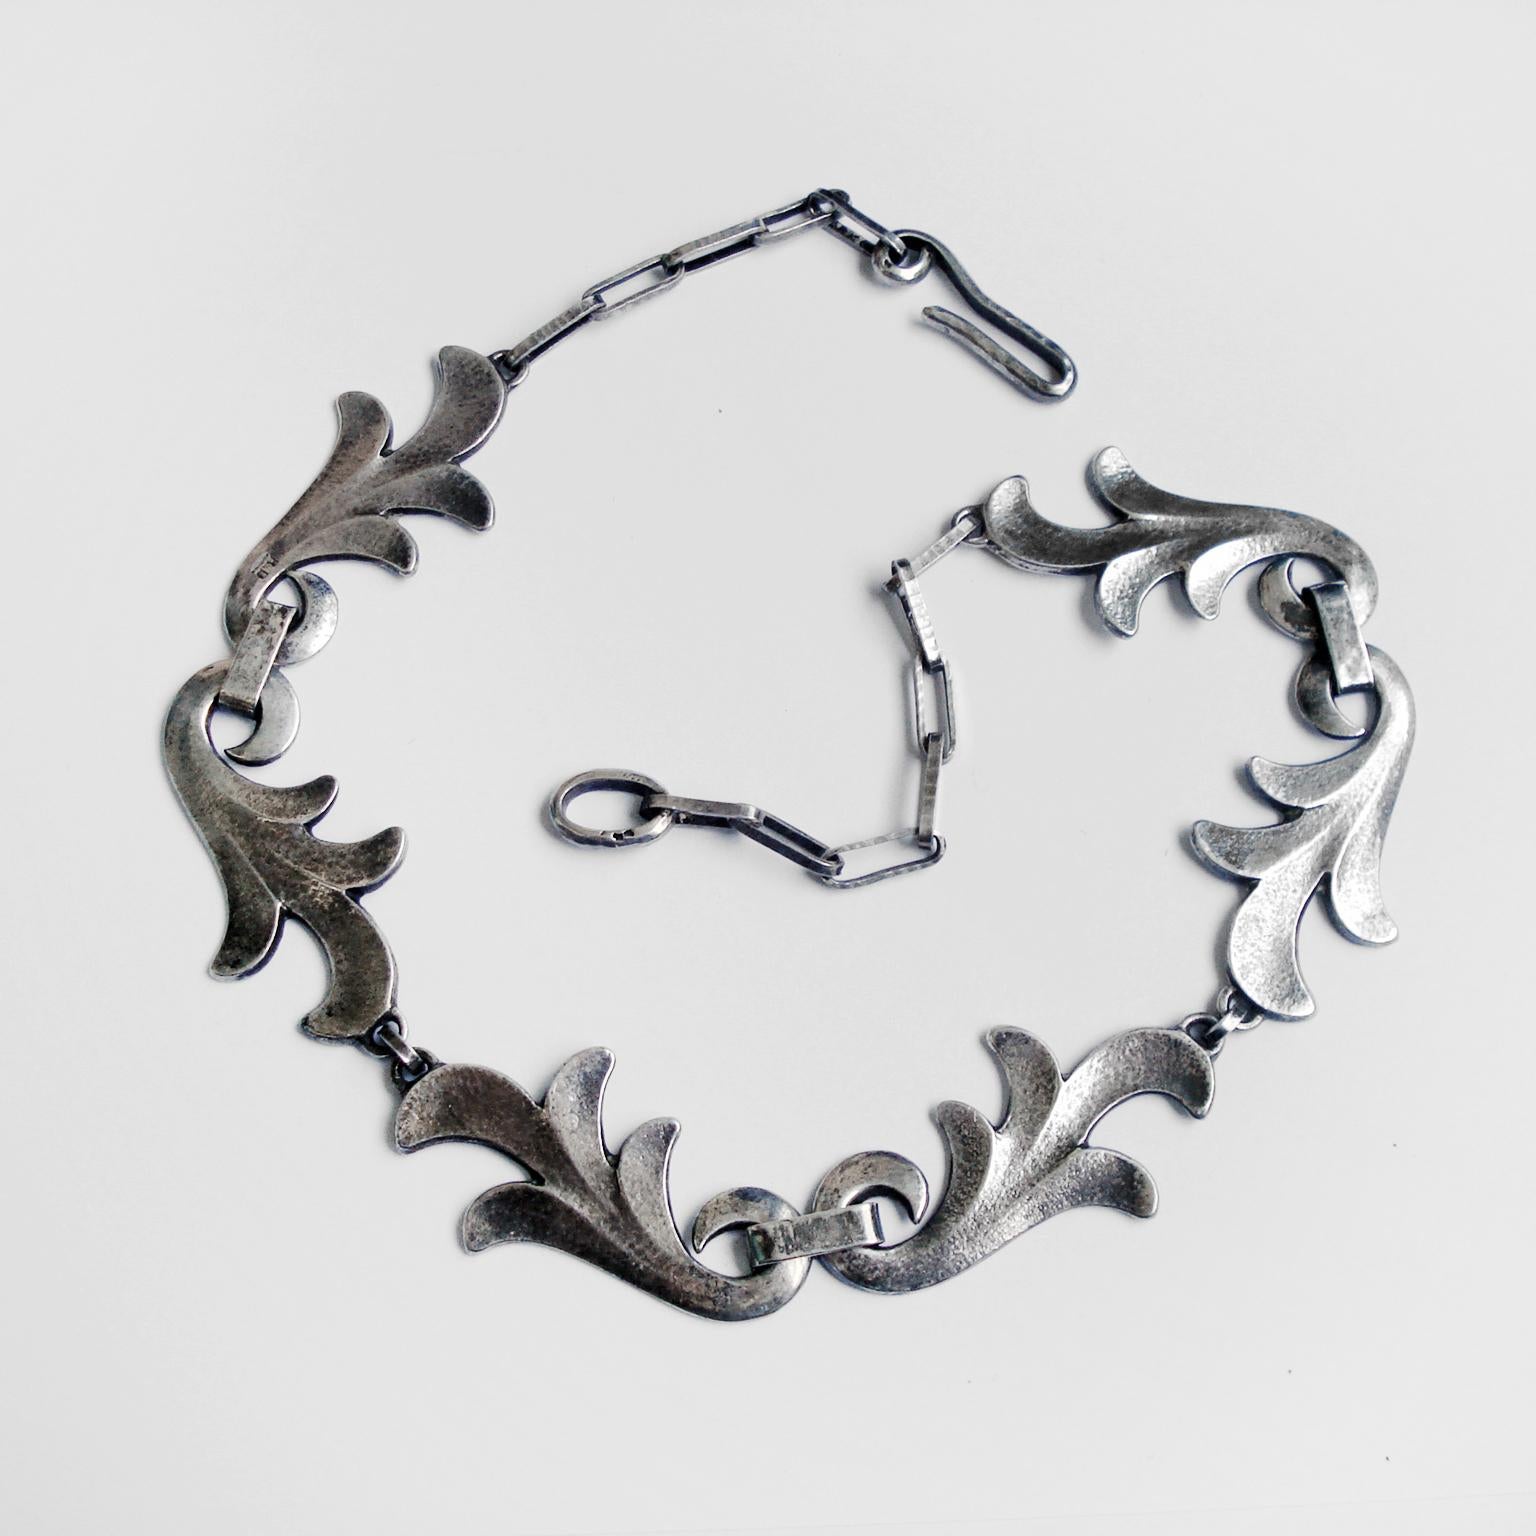 Un exquis collier Art Déco en argent par Rene Delavan. En forme de feuilles d'acanthe entrelacées. Marqué 